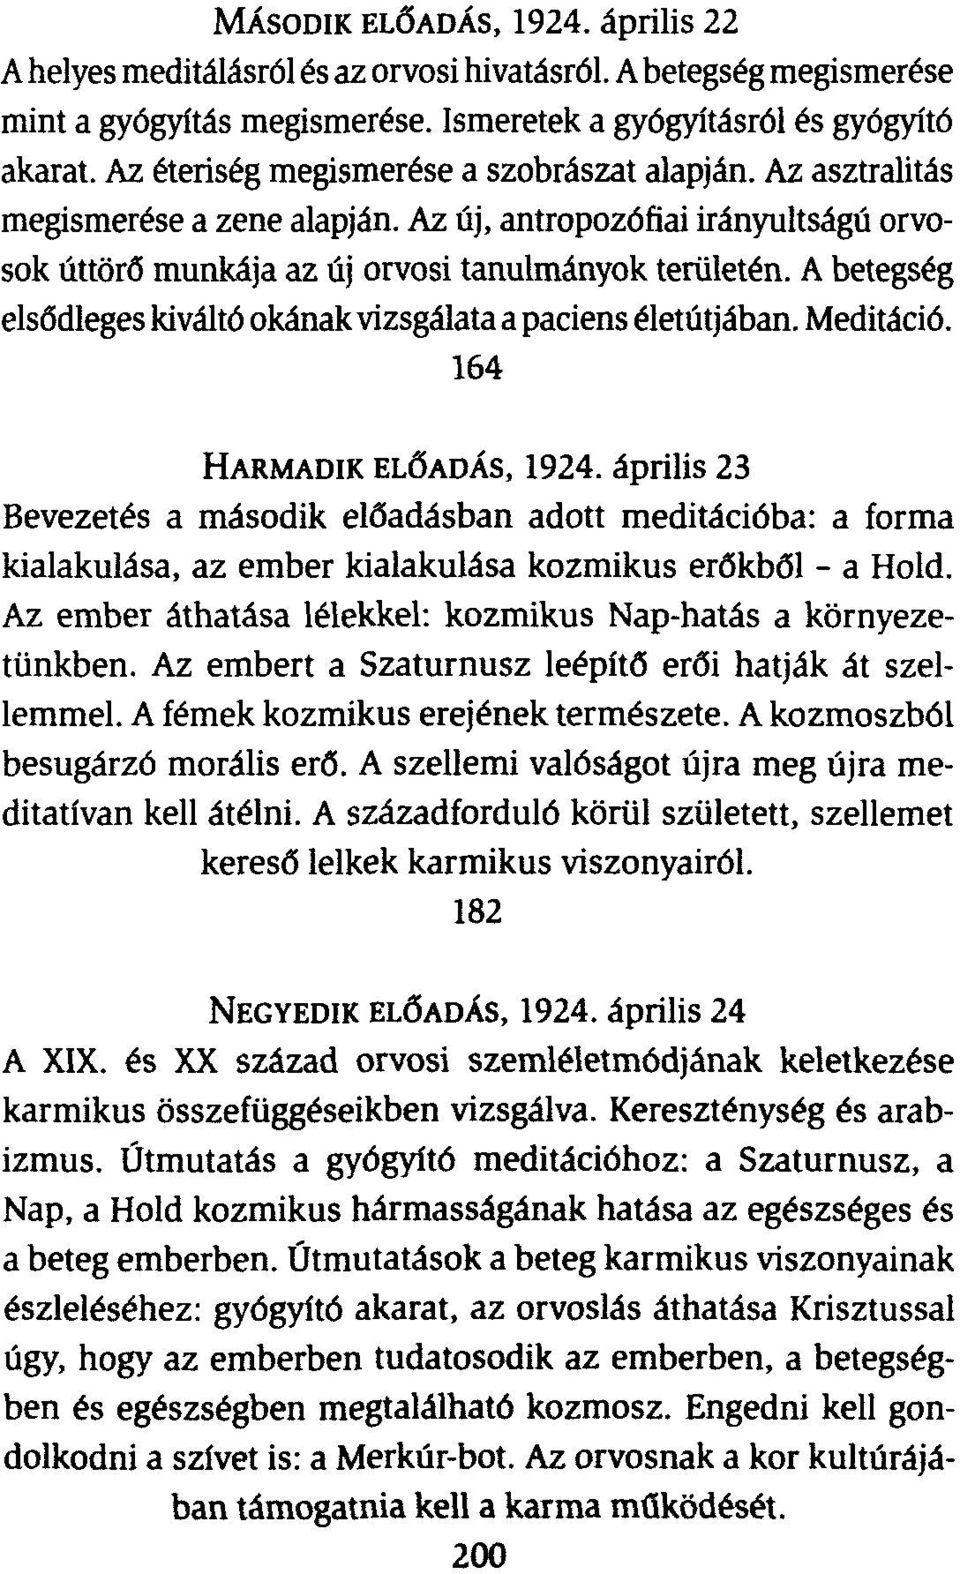 A betegség elsődleges kiváltó okának vizsgálata a paciens életútjában. Meditáció. 164 HARMADIK ELŐADÁS, 1924.